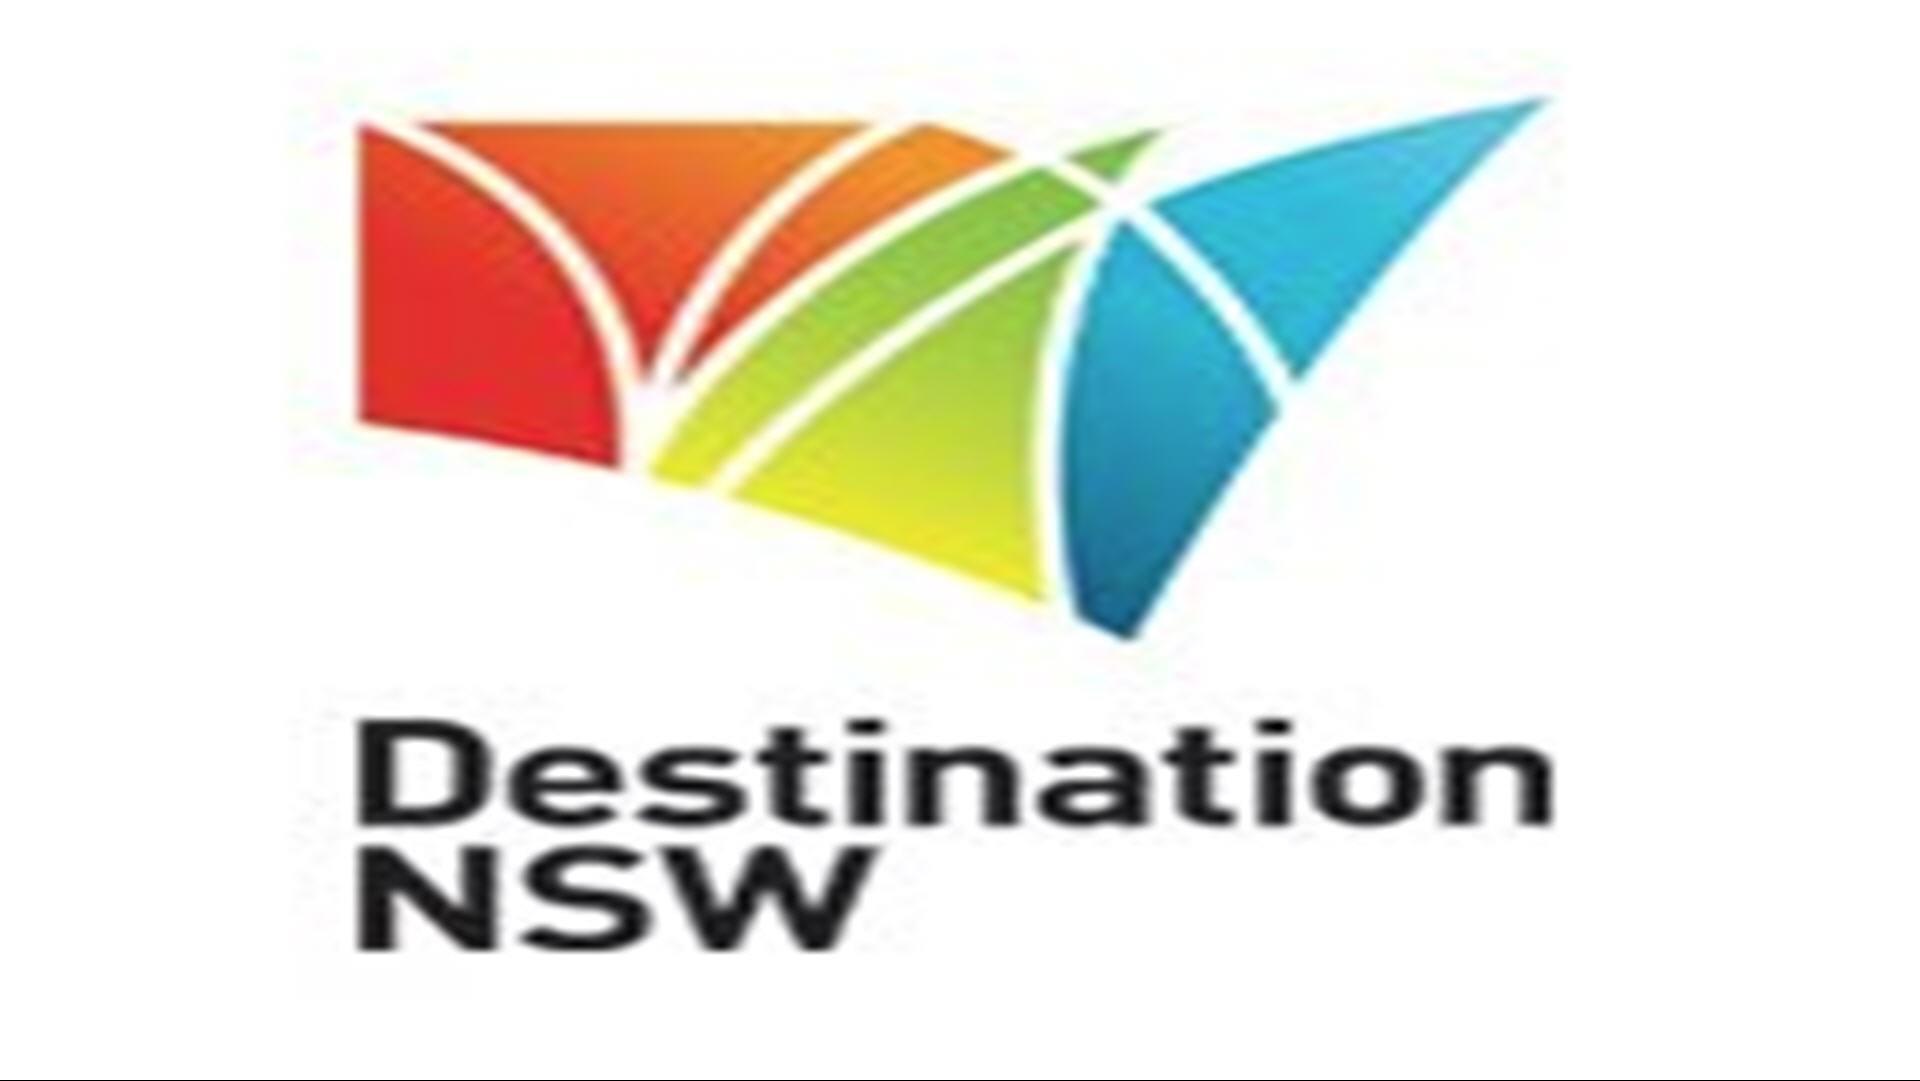 Destination NSW in Sydney, AU